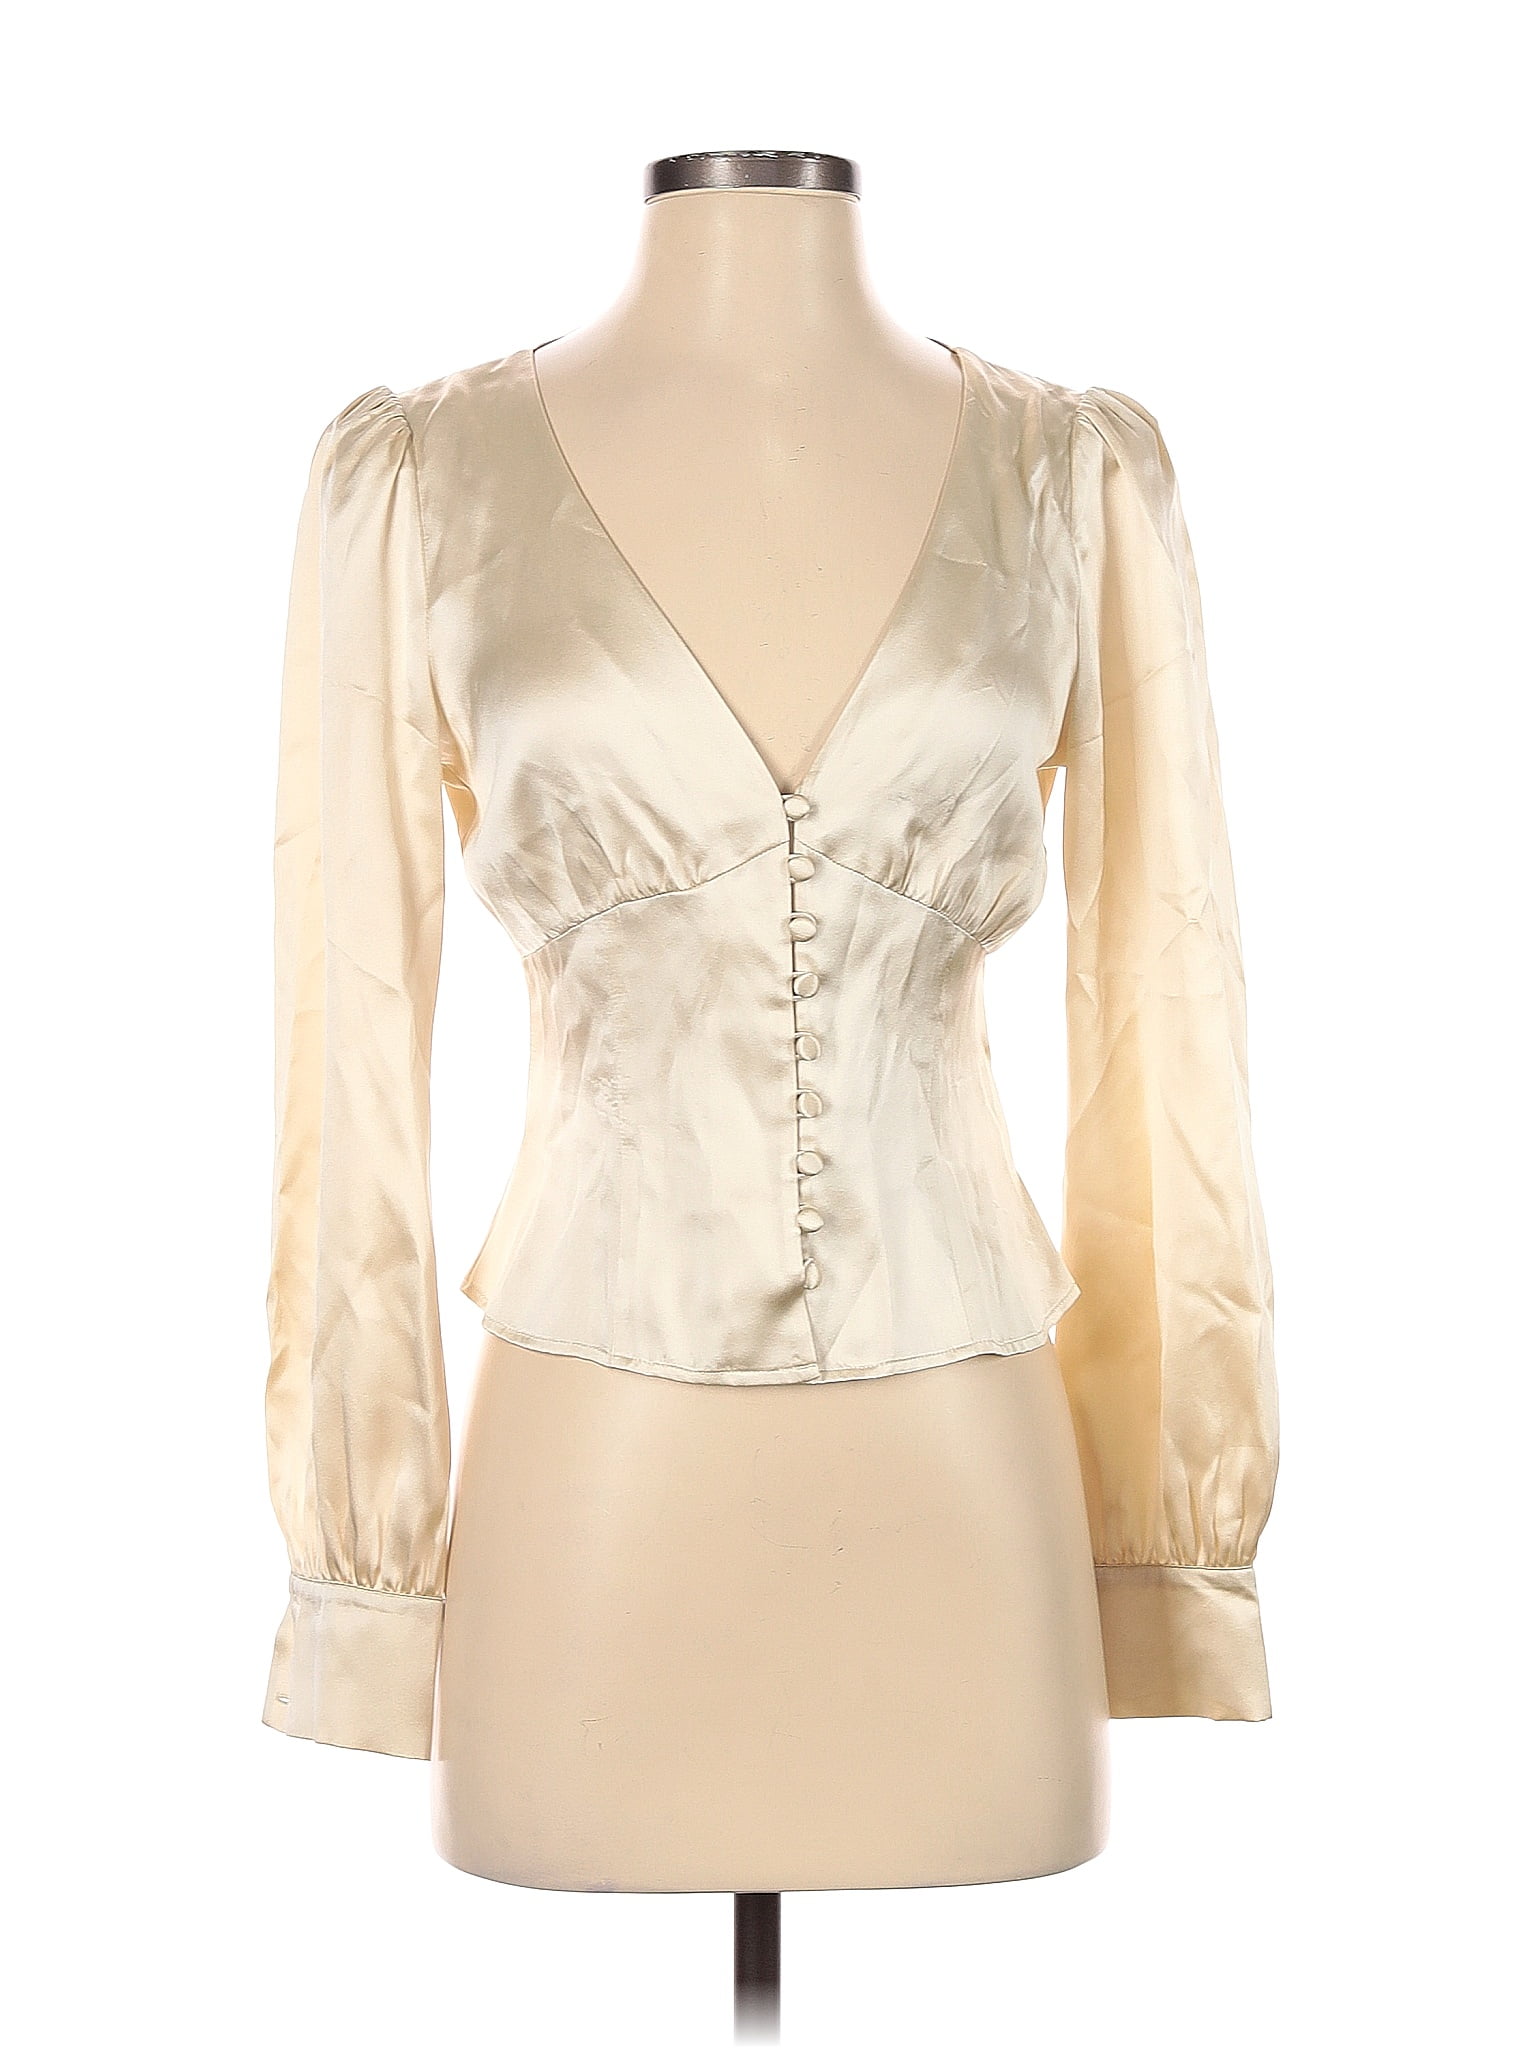 Reformation 100% Silk Ivory Bodysuit Size S - 73% off | ThredUp